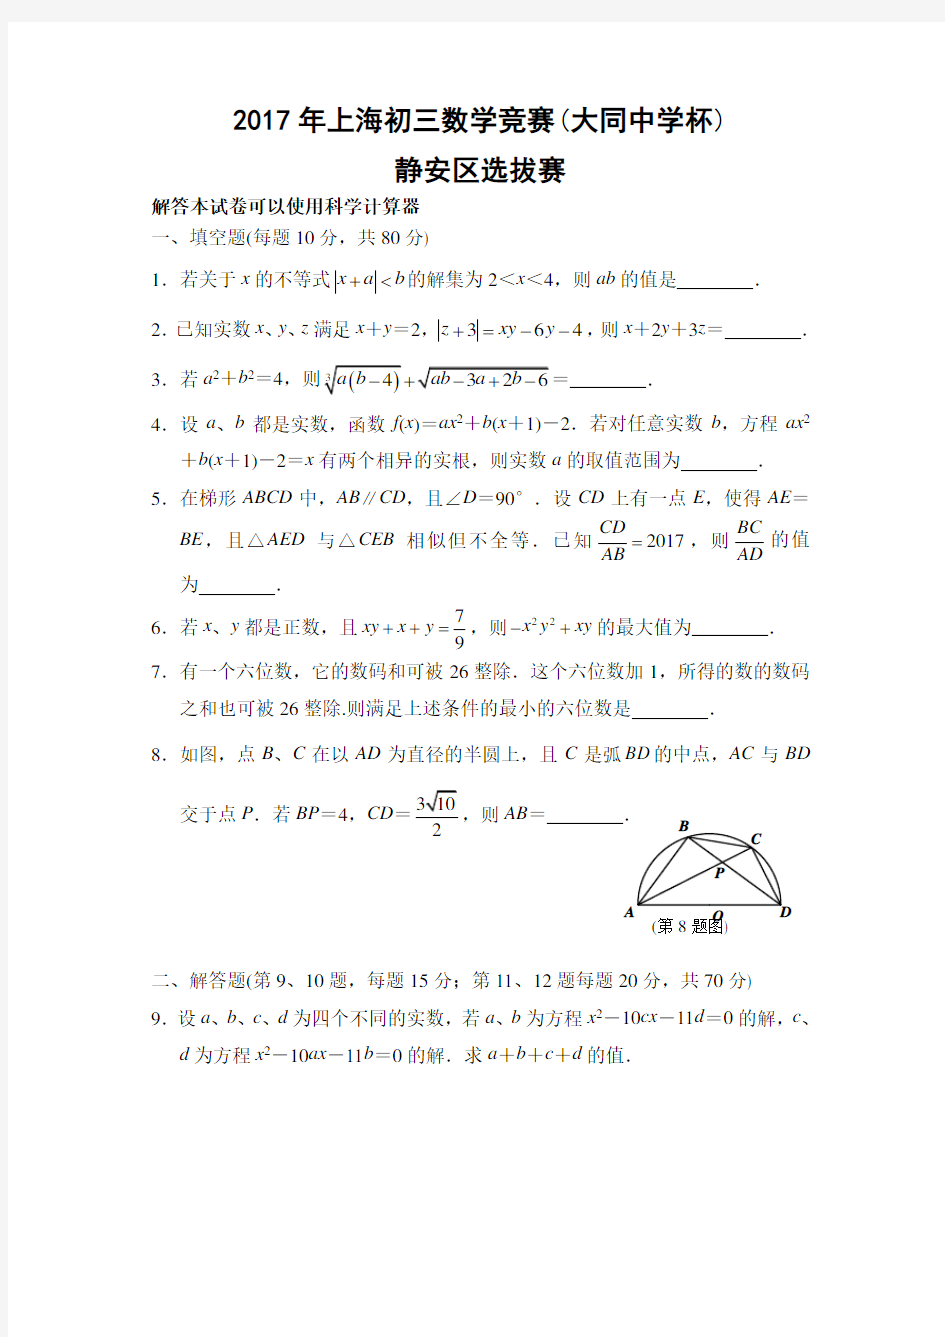 2017年上海市大同杯九年级数学竞赛静安区初赛试题